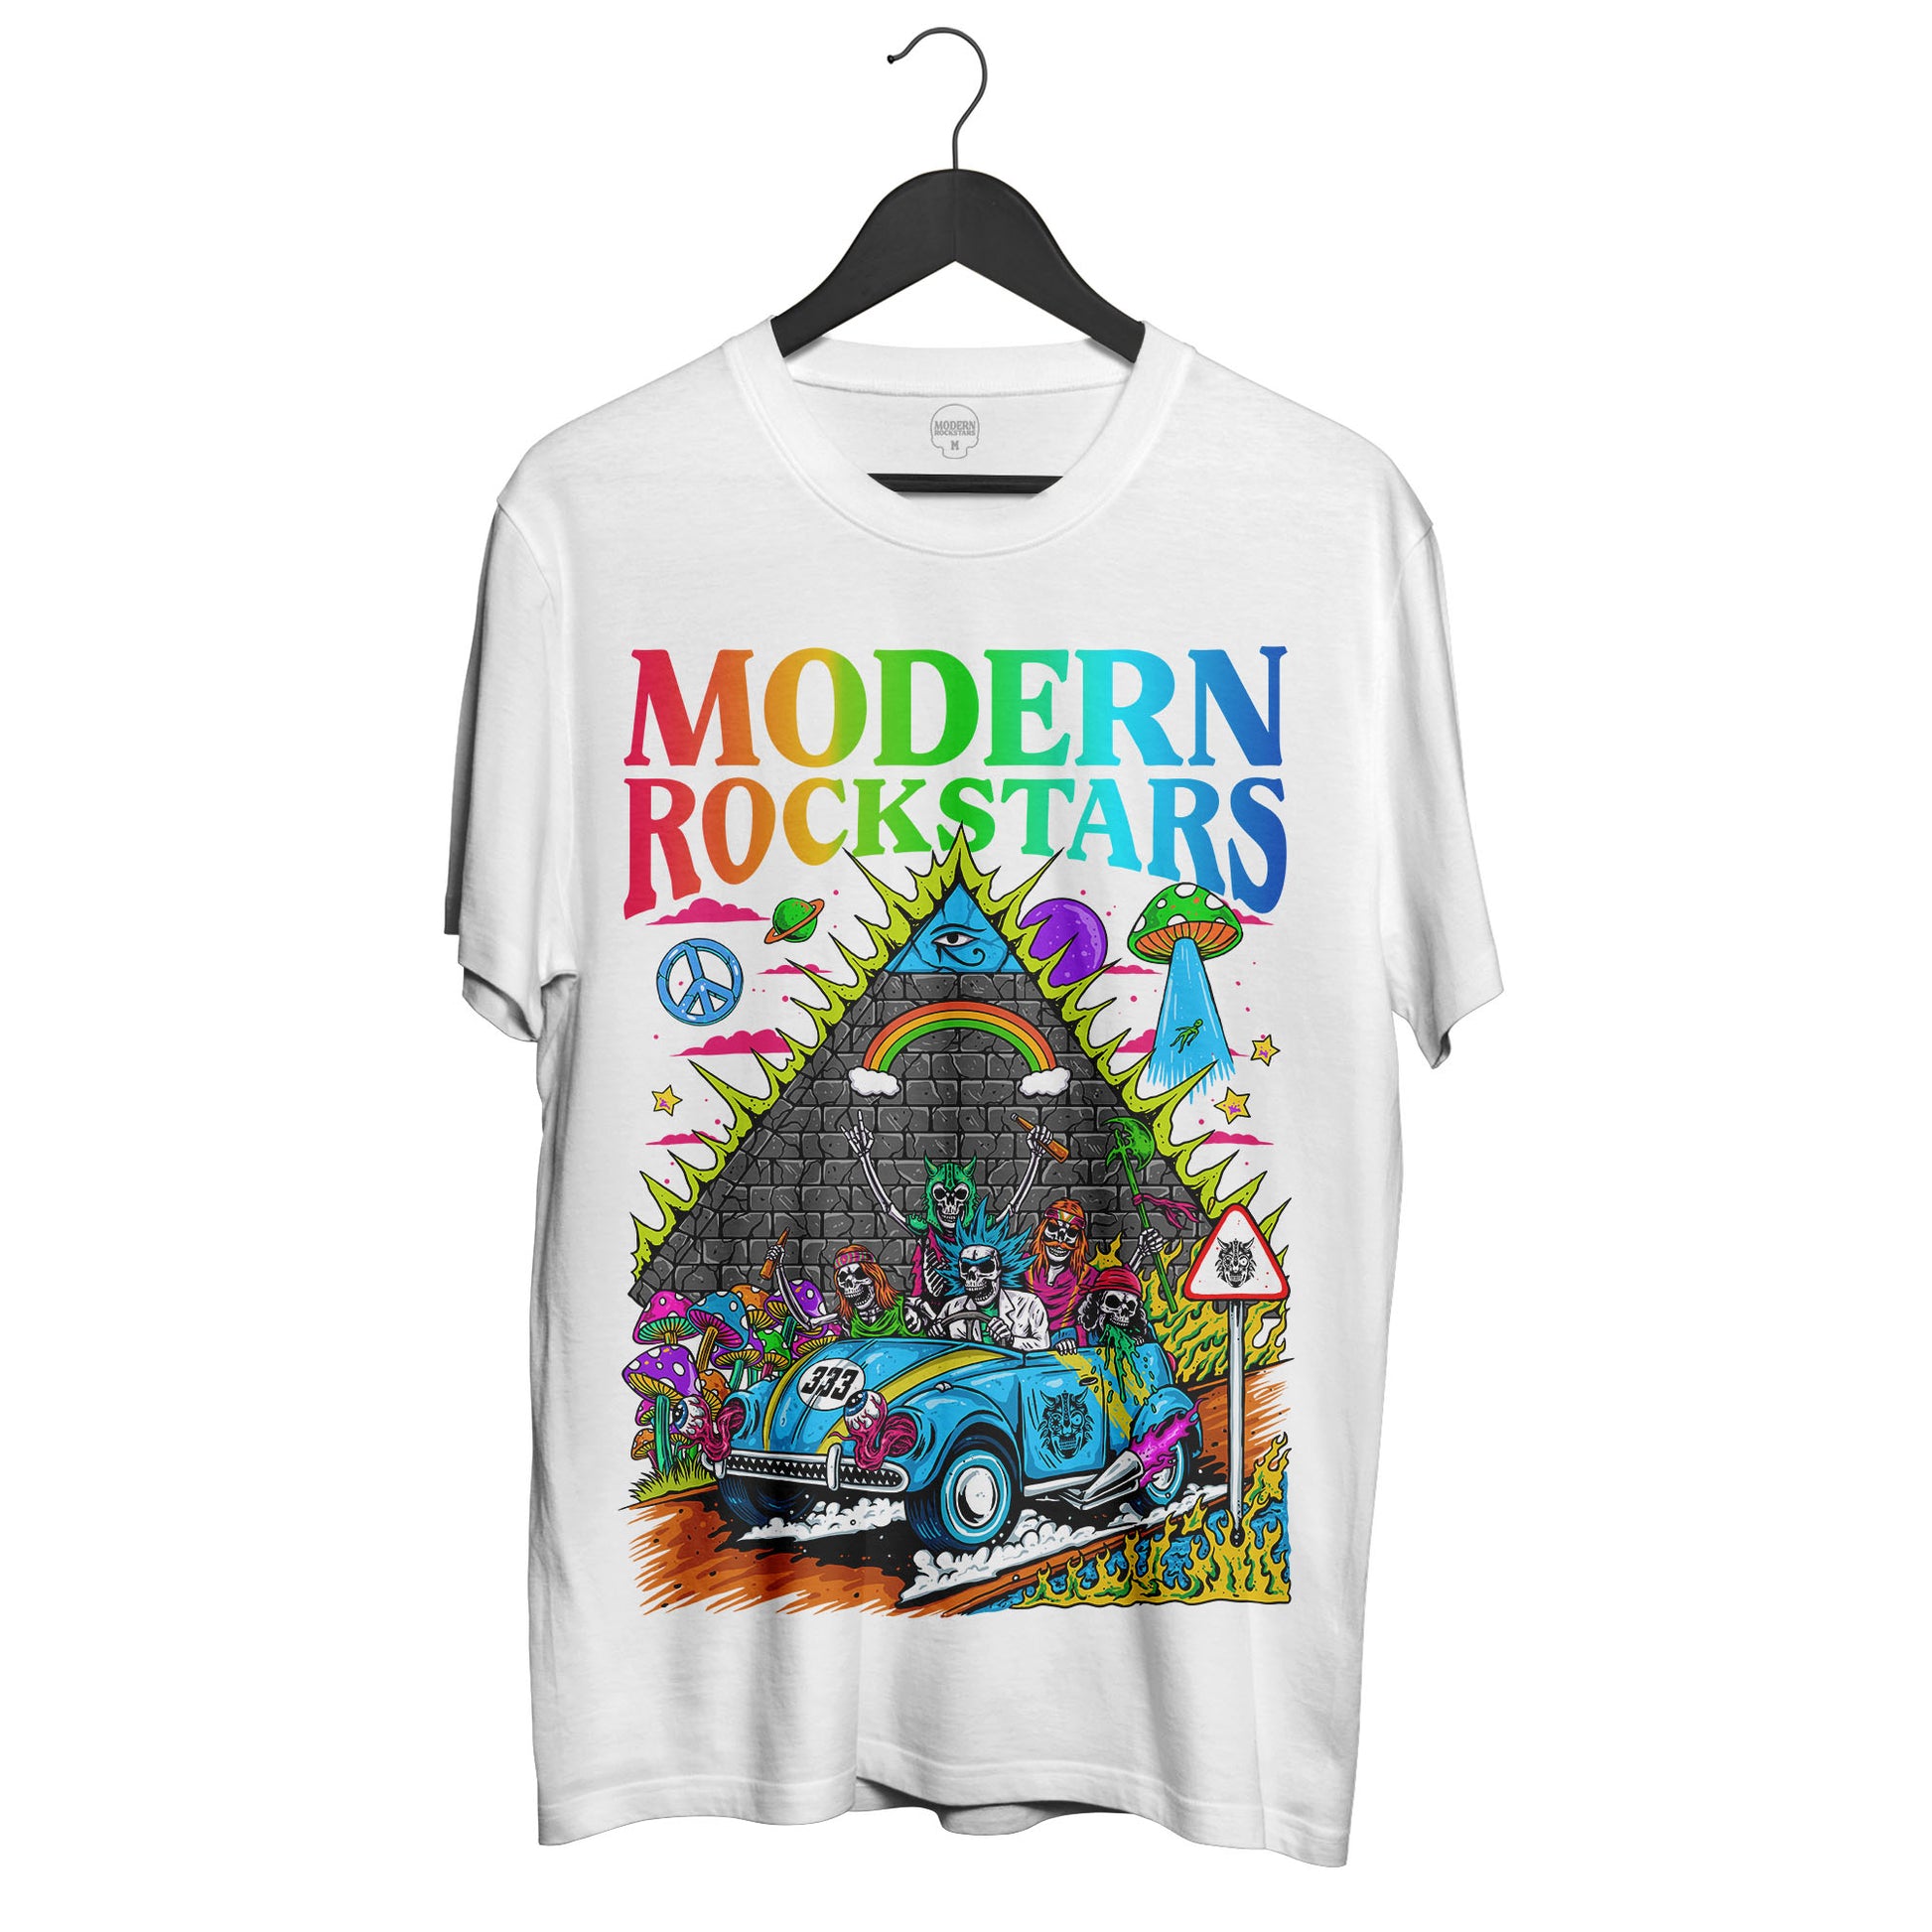 The Rockstars TRIP T-Shirt - Modern Rockstars